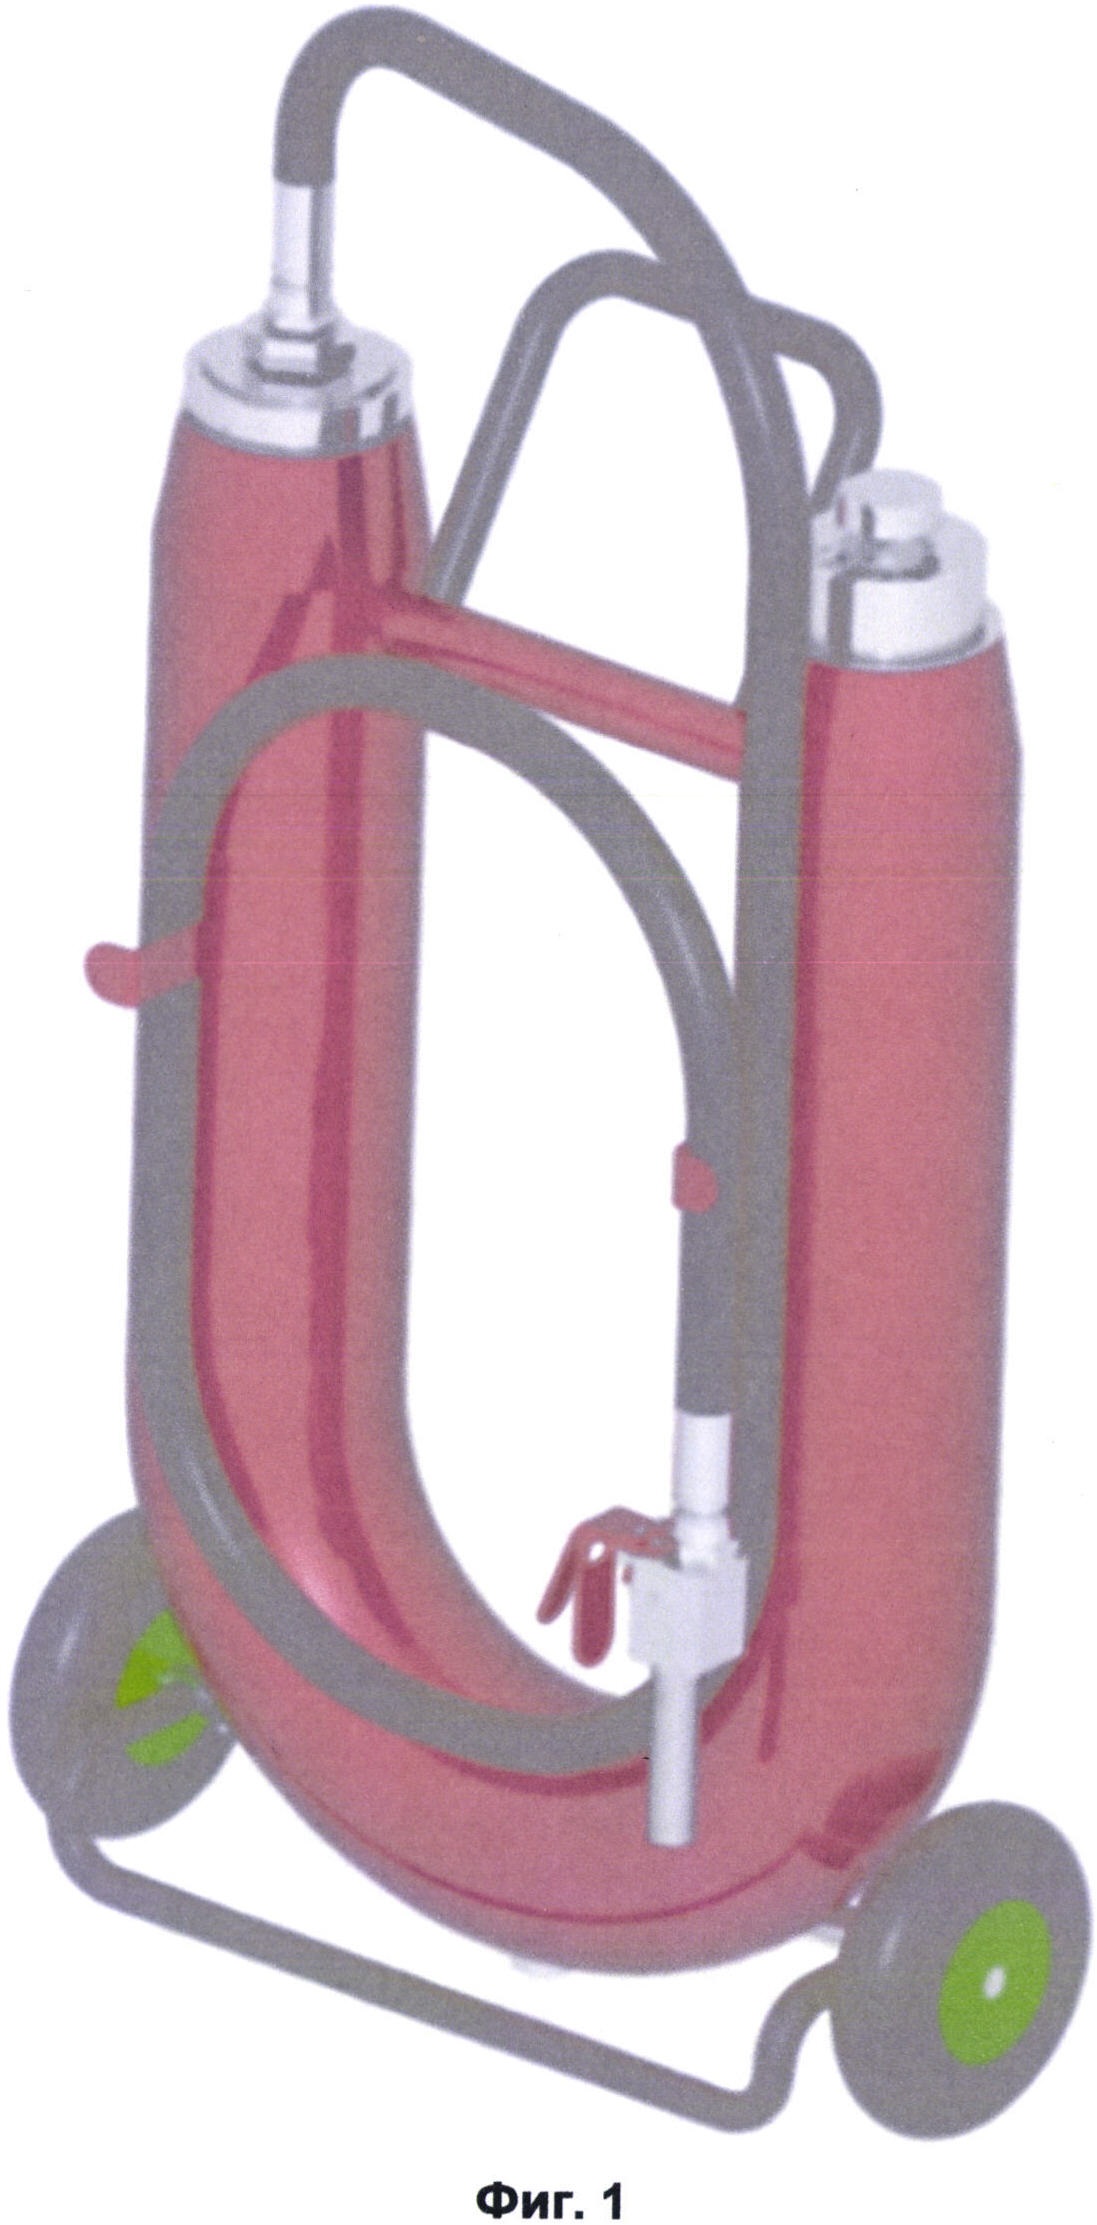 Огнетушитель с U-образным корпусом газогенераторный для взрывопожаропредотвращения и твердопенного тушения